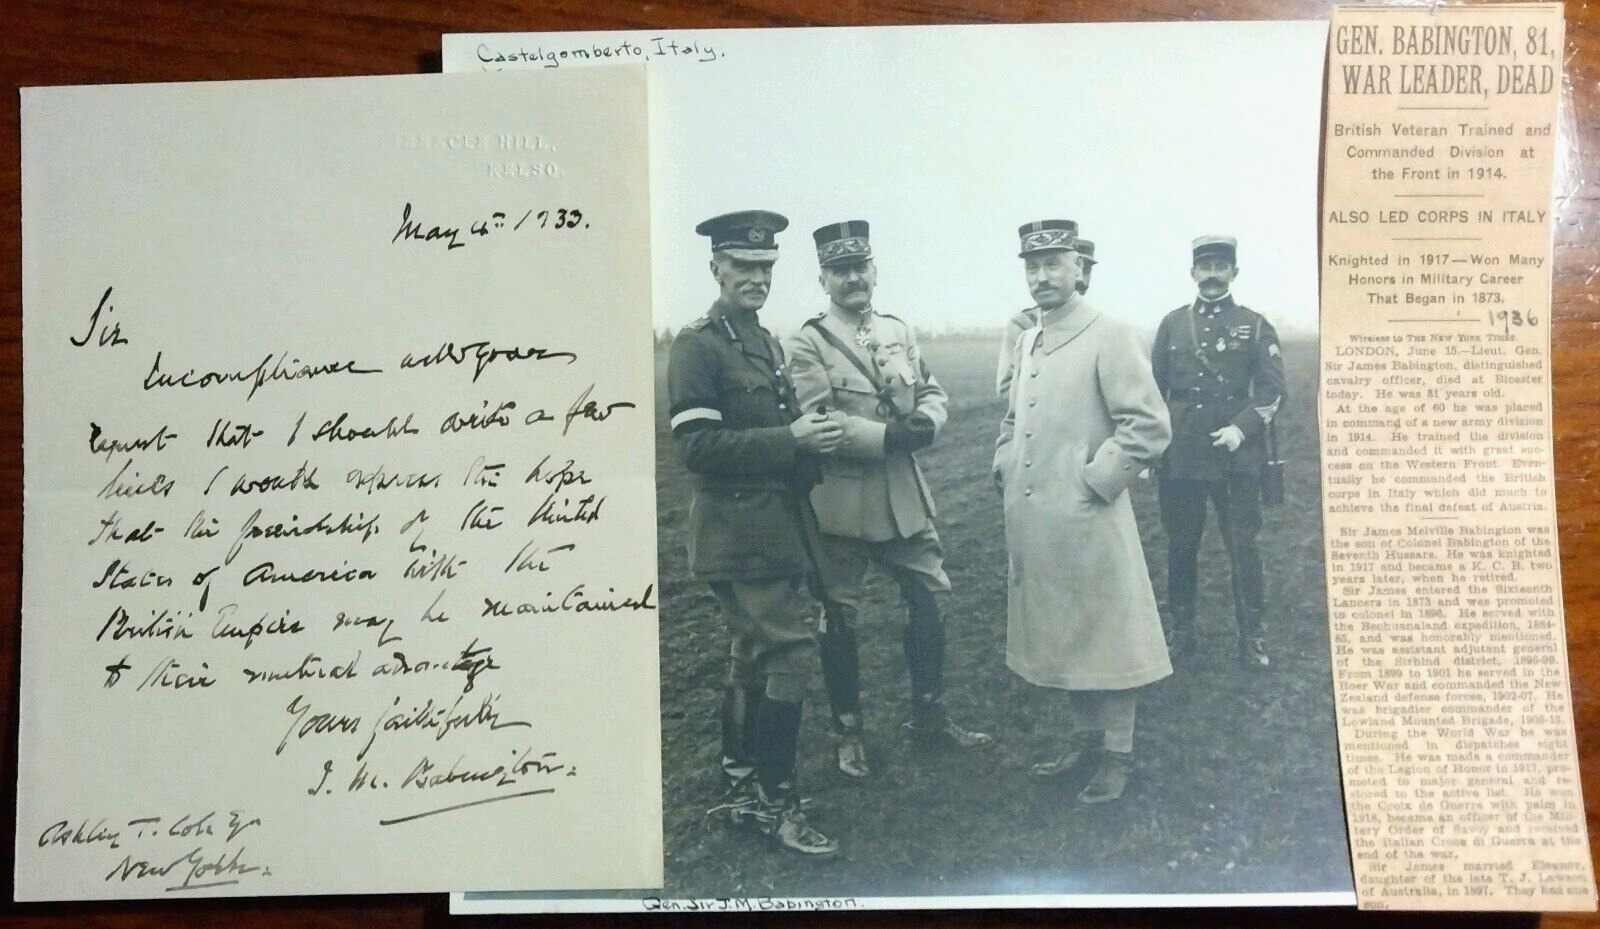 Lt. General Sir James Melville Babington (1854-1936) Signed Letter & WWI Photo